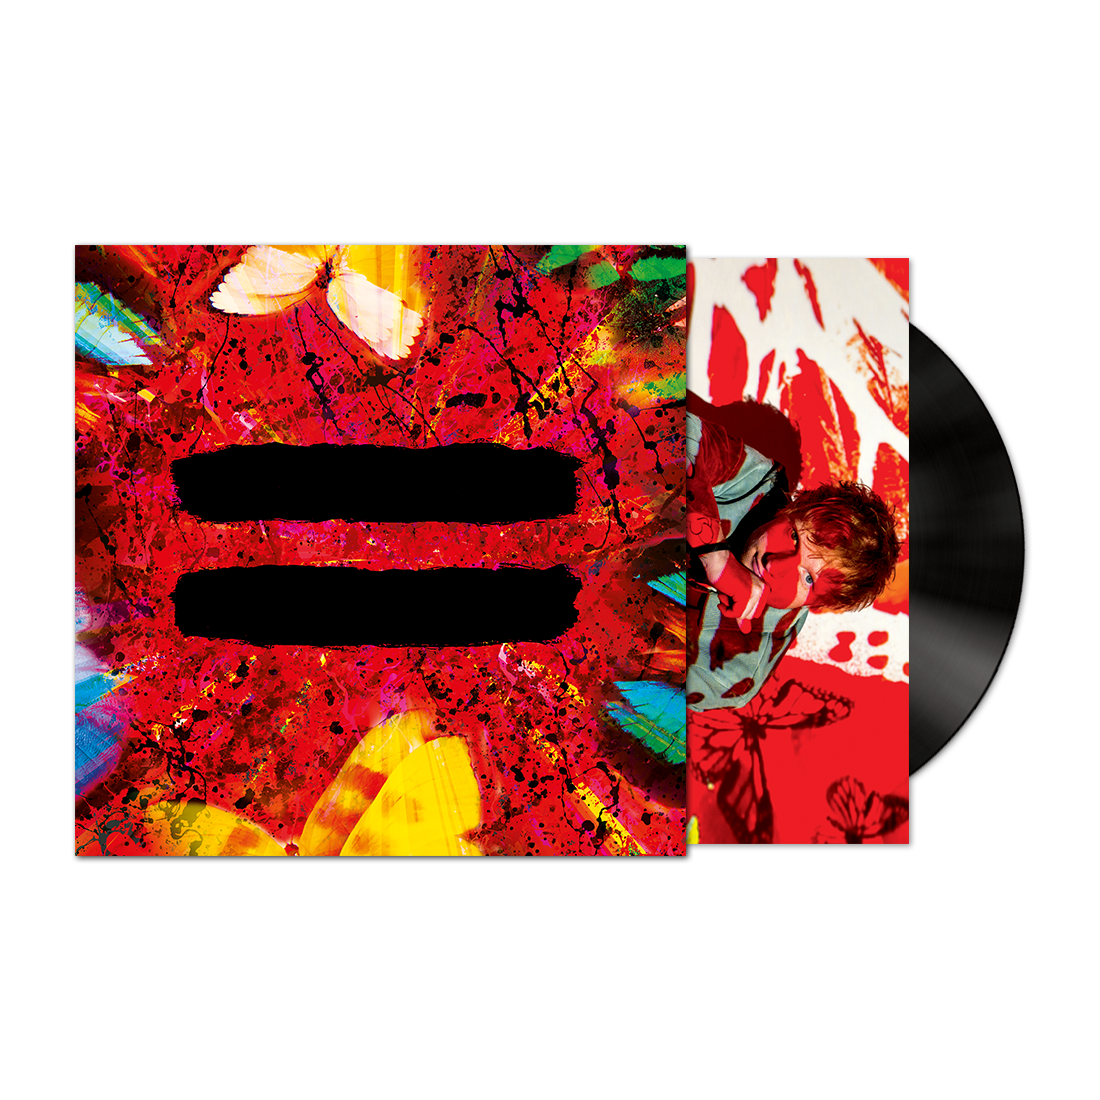 Ed Sheeran – = (Equals) - VINYL LP